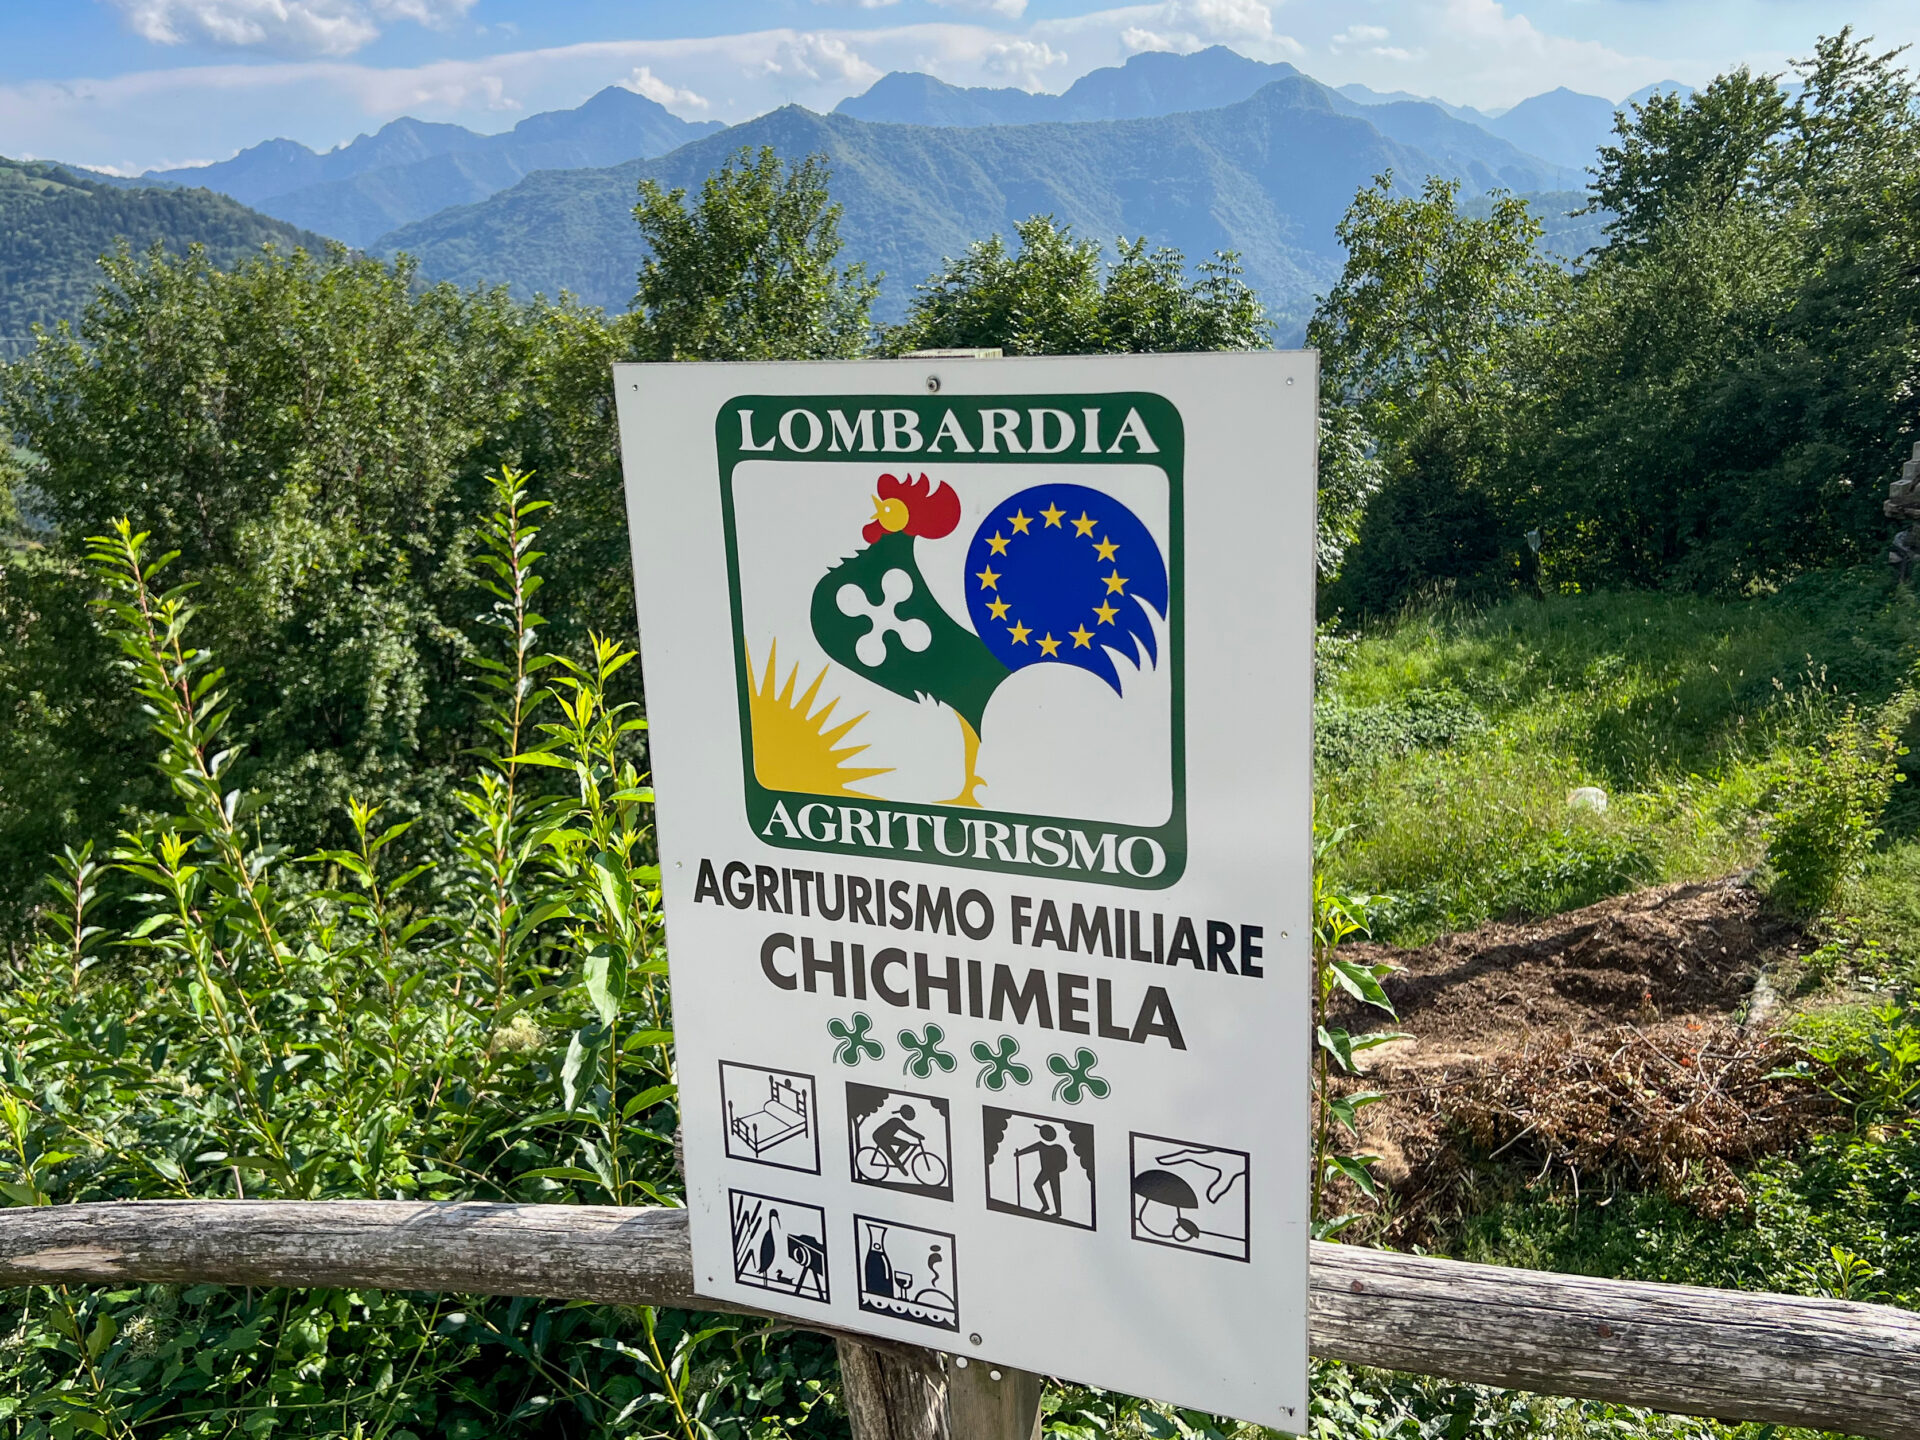 Der Agtoturismo Chichimela in den Bergen nördlich von Brescia